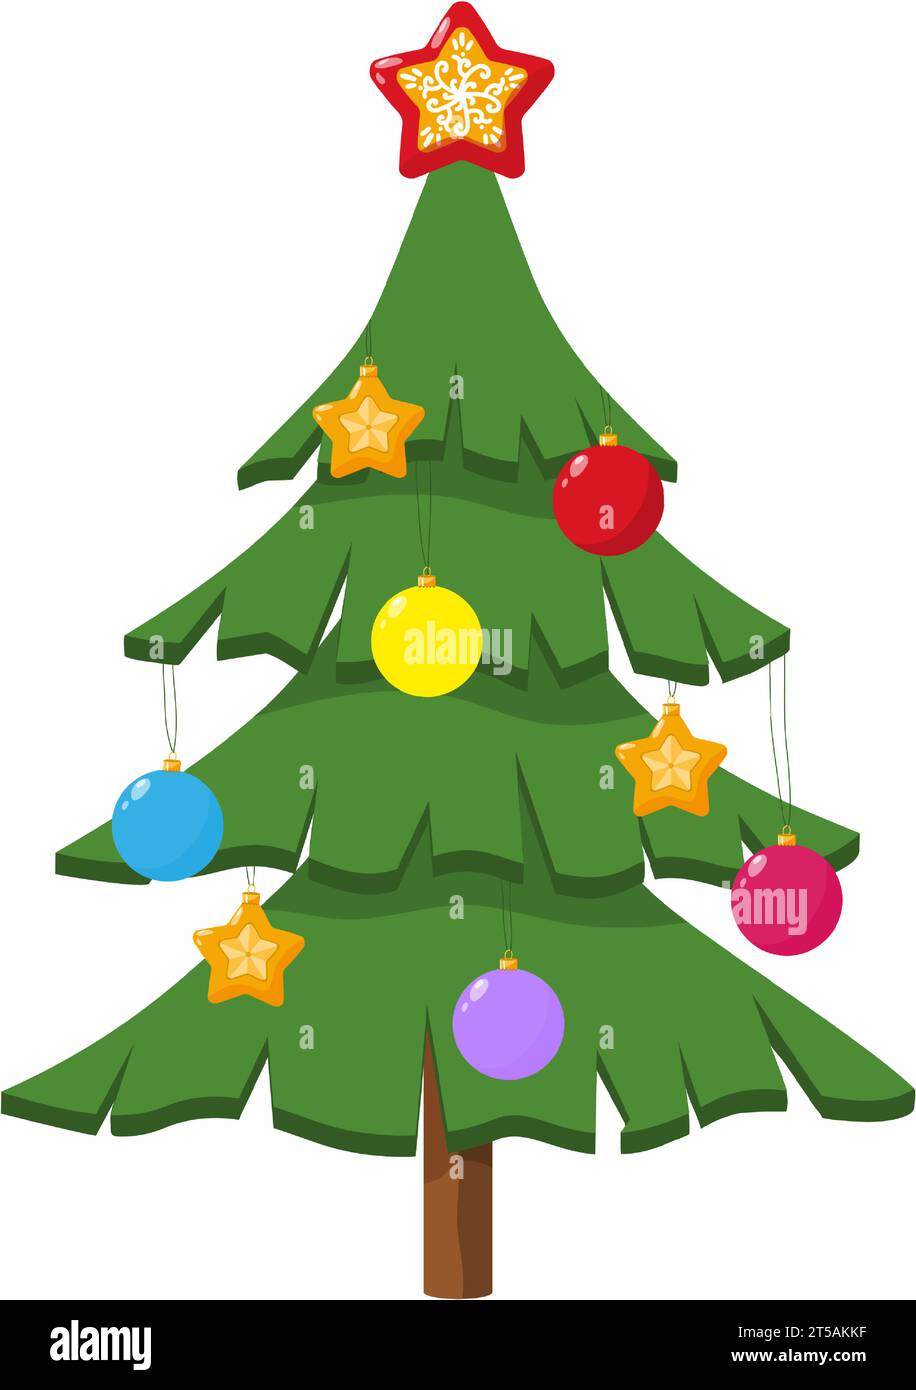 Weihnachtsbaum mit Kugeln und Sternen dekoriert. Immergrüner Nadelbaum mit charakteristischer konischer Form und hängenden Kegeln. Symbol für Weihnachten Stock Vektor